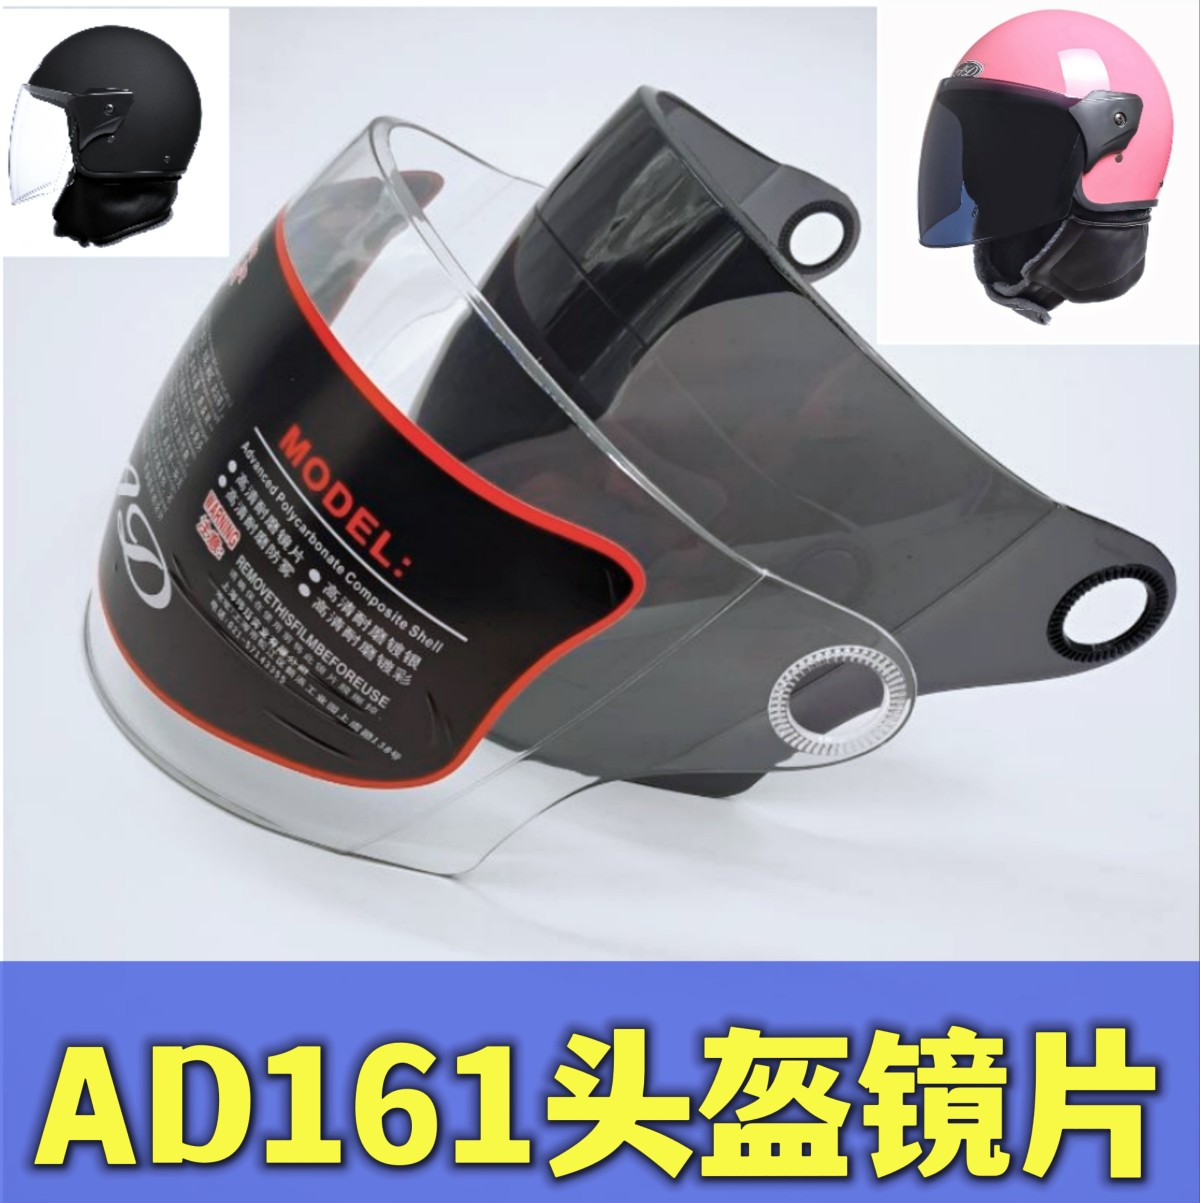 安达AD161 179电动车头盔镜片风镜挡风玻璃面罩护目高清防雾通用